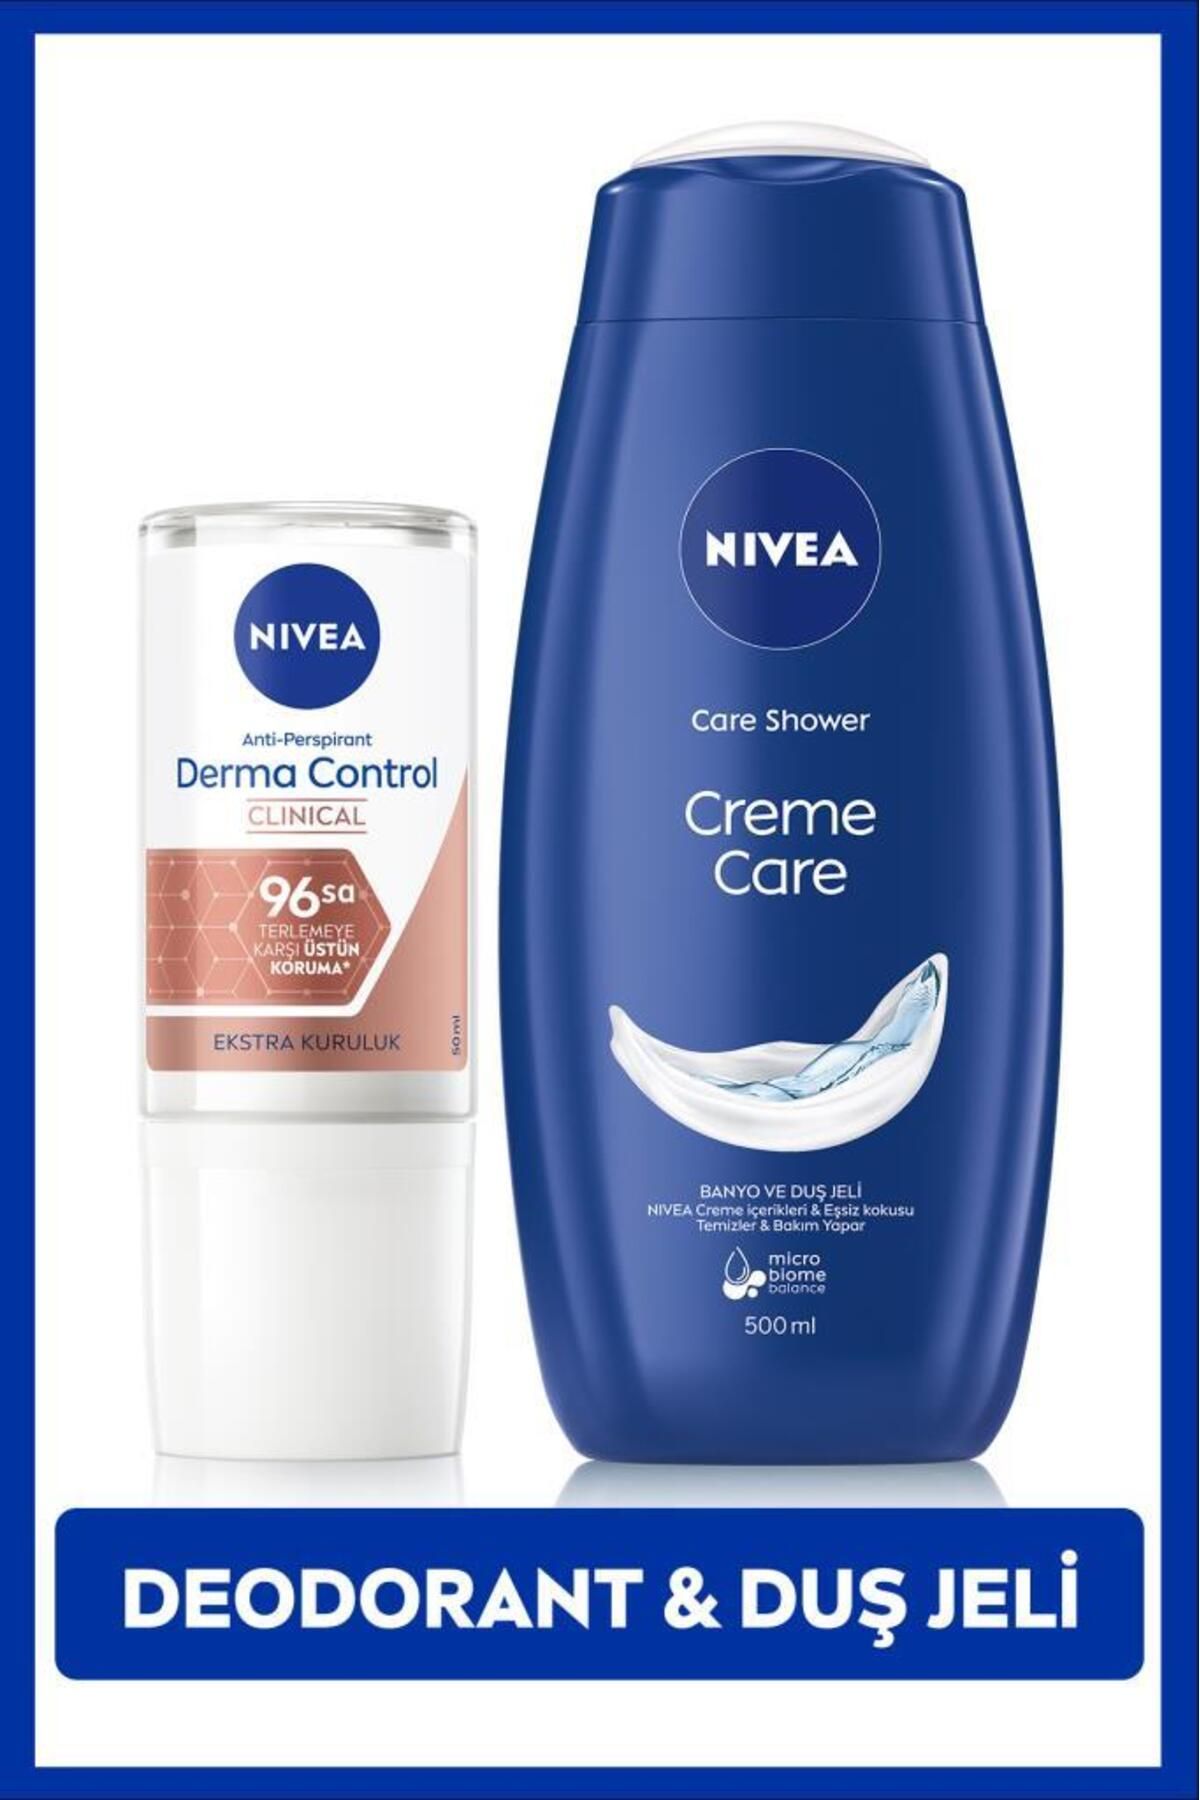 NIVEA Kadın Roll-on Deodorant Derma Control Clinical 50ml ve Creme Care Nemlendirici Duş Jeli 500ml